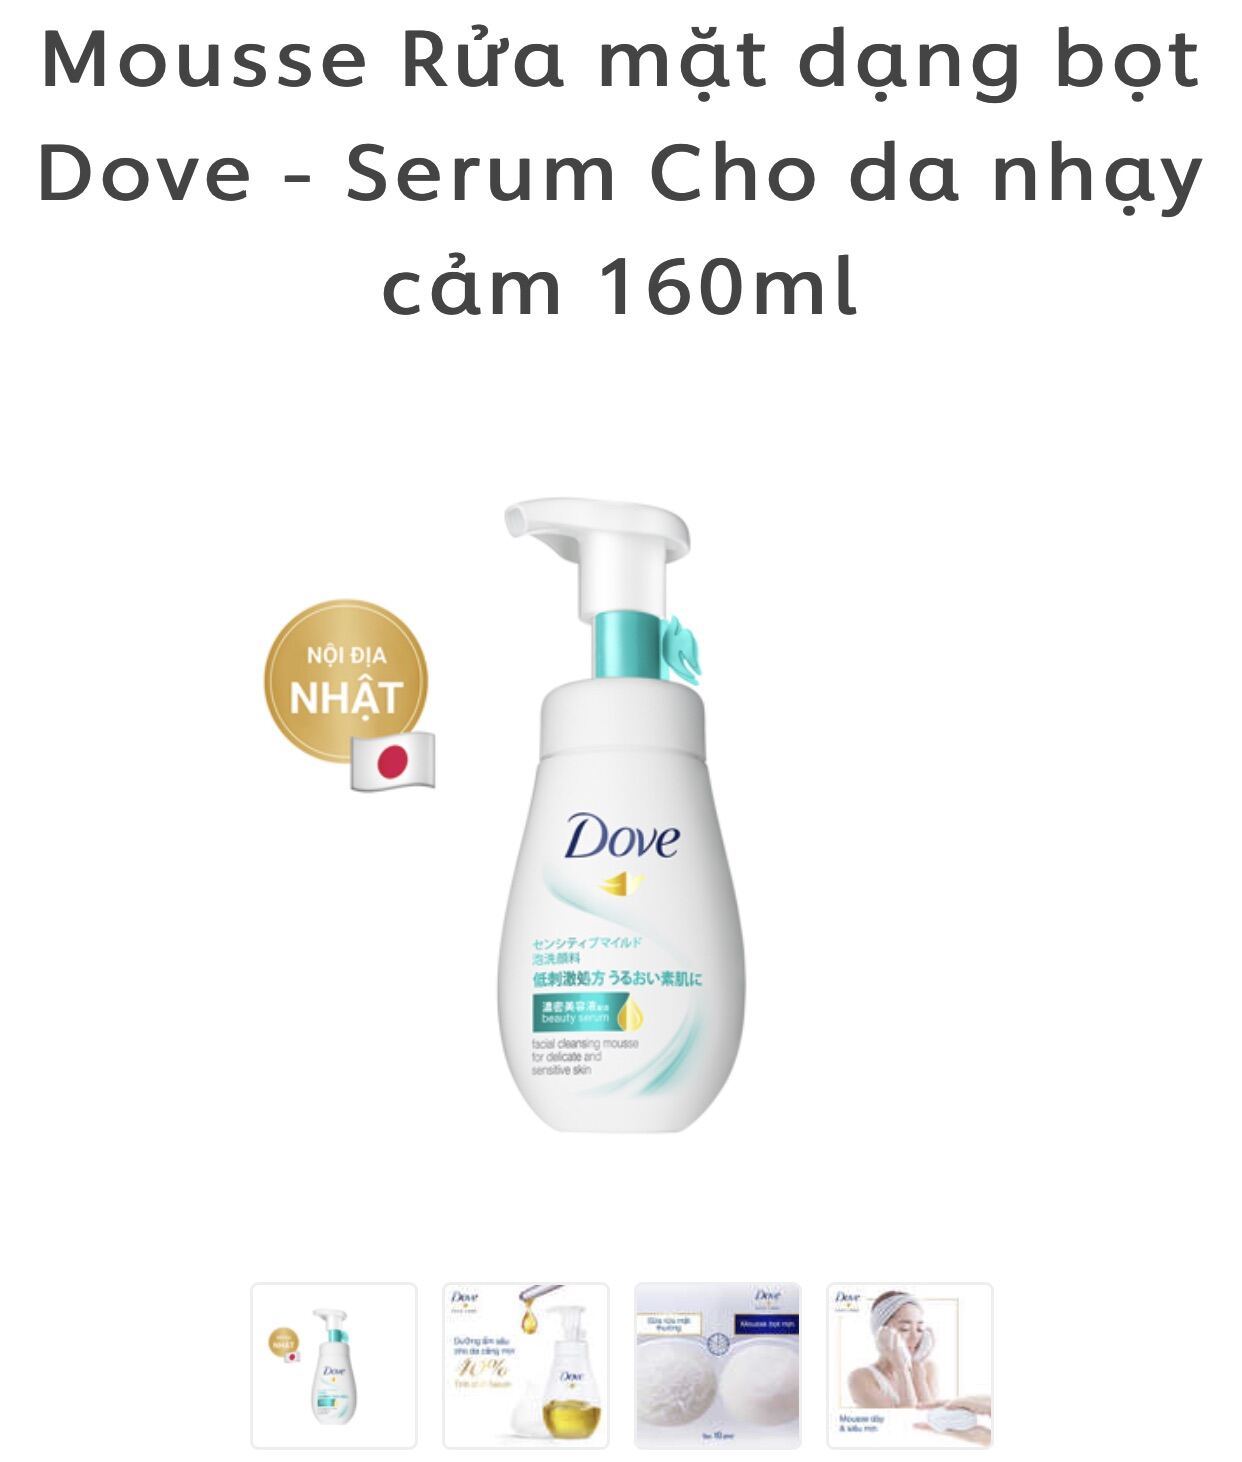 Mousse Rửa mặt dạng bọt Dove - Serum Cho da nhạy cảm 160ml nhập khẩu